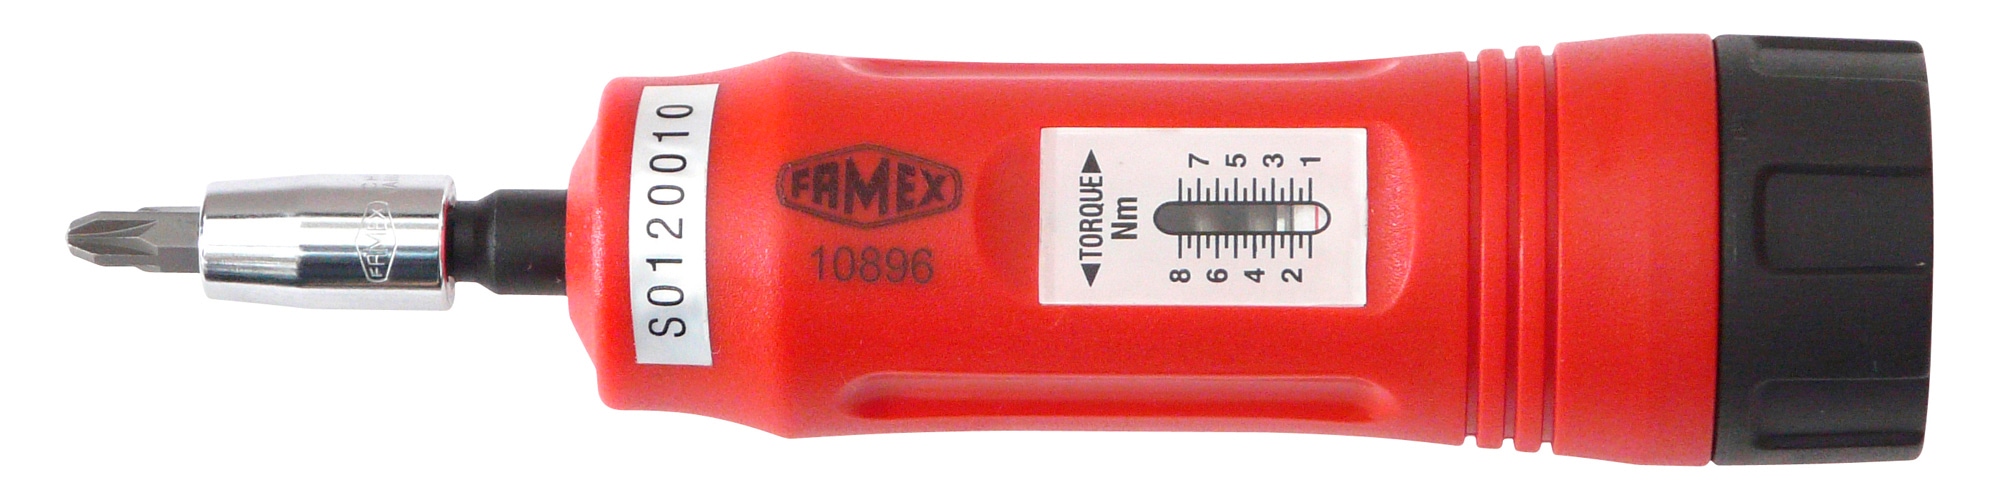 FAMEX Drehmomentschlüssel »10896«, 1-8 Nm kaufen